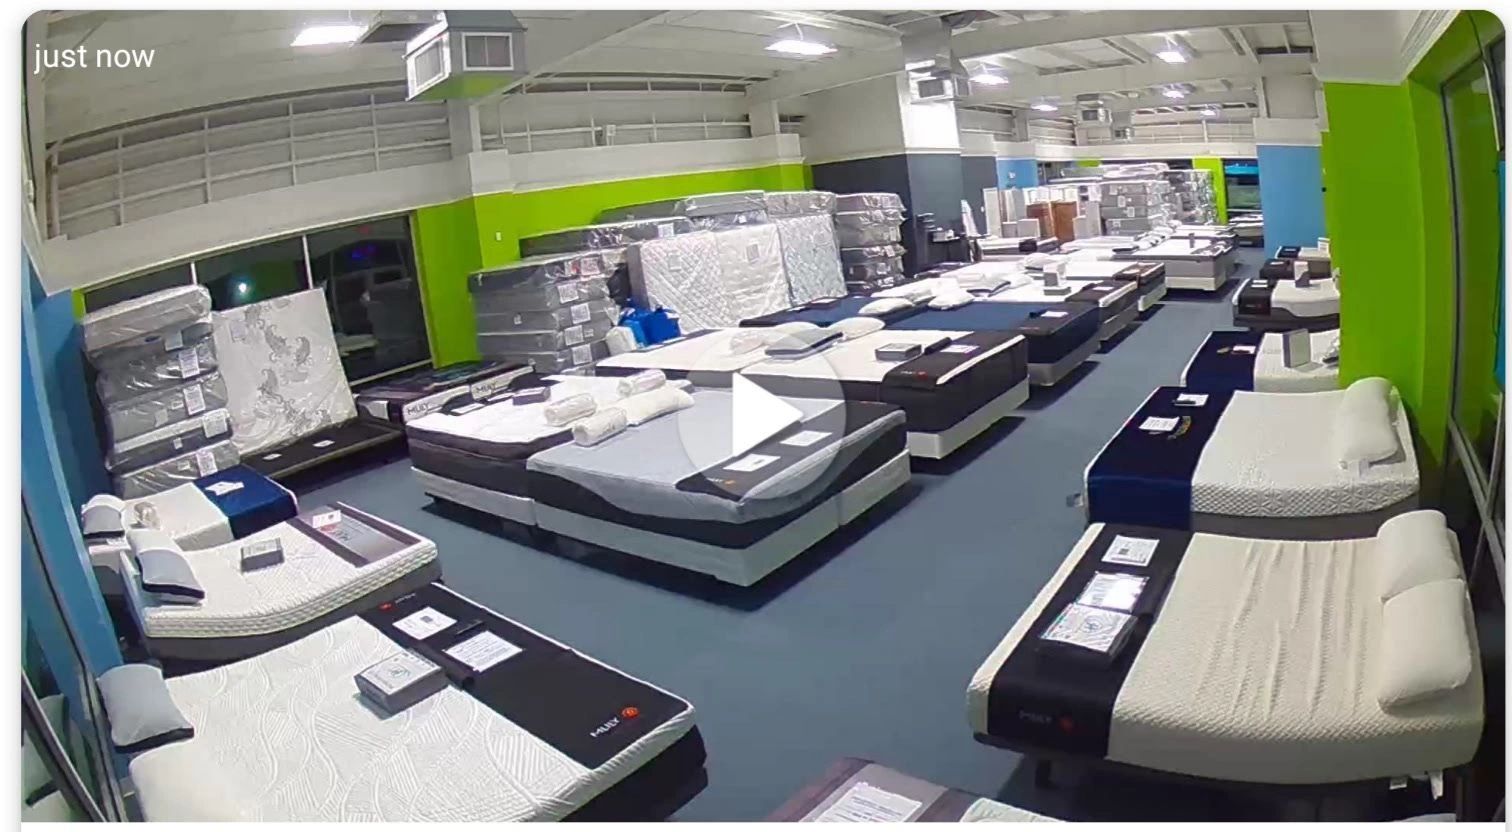 mattress clearance center - huntsville reviews